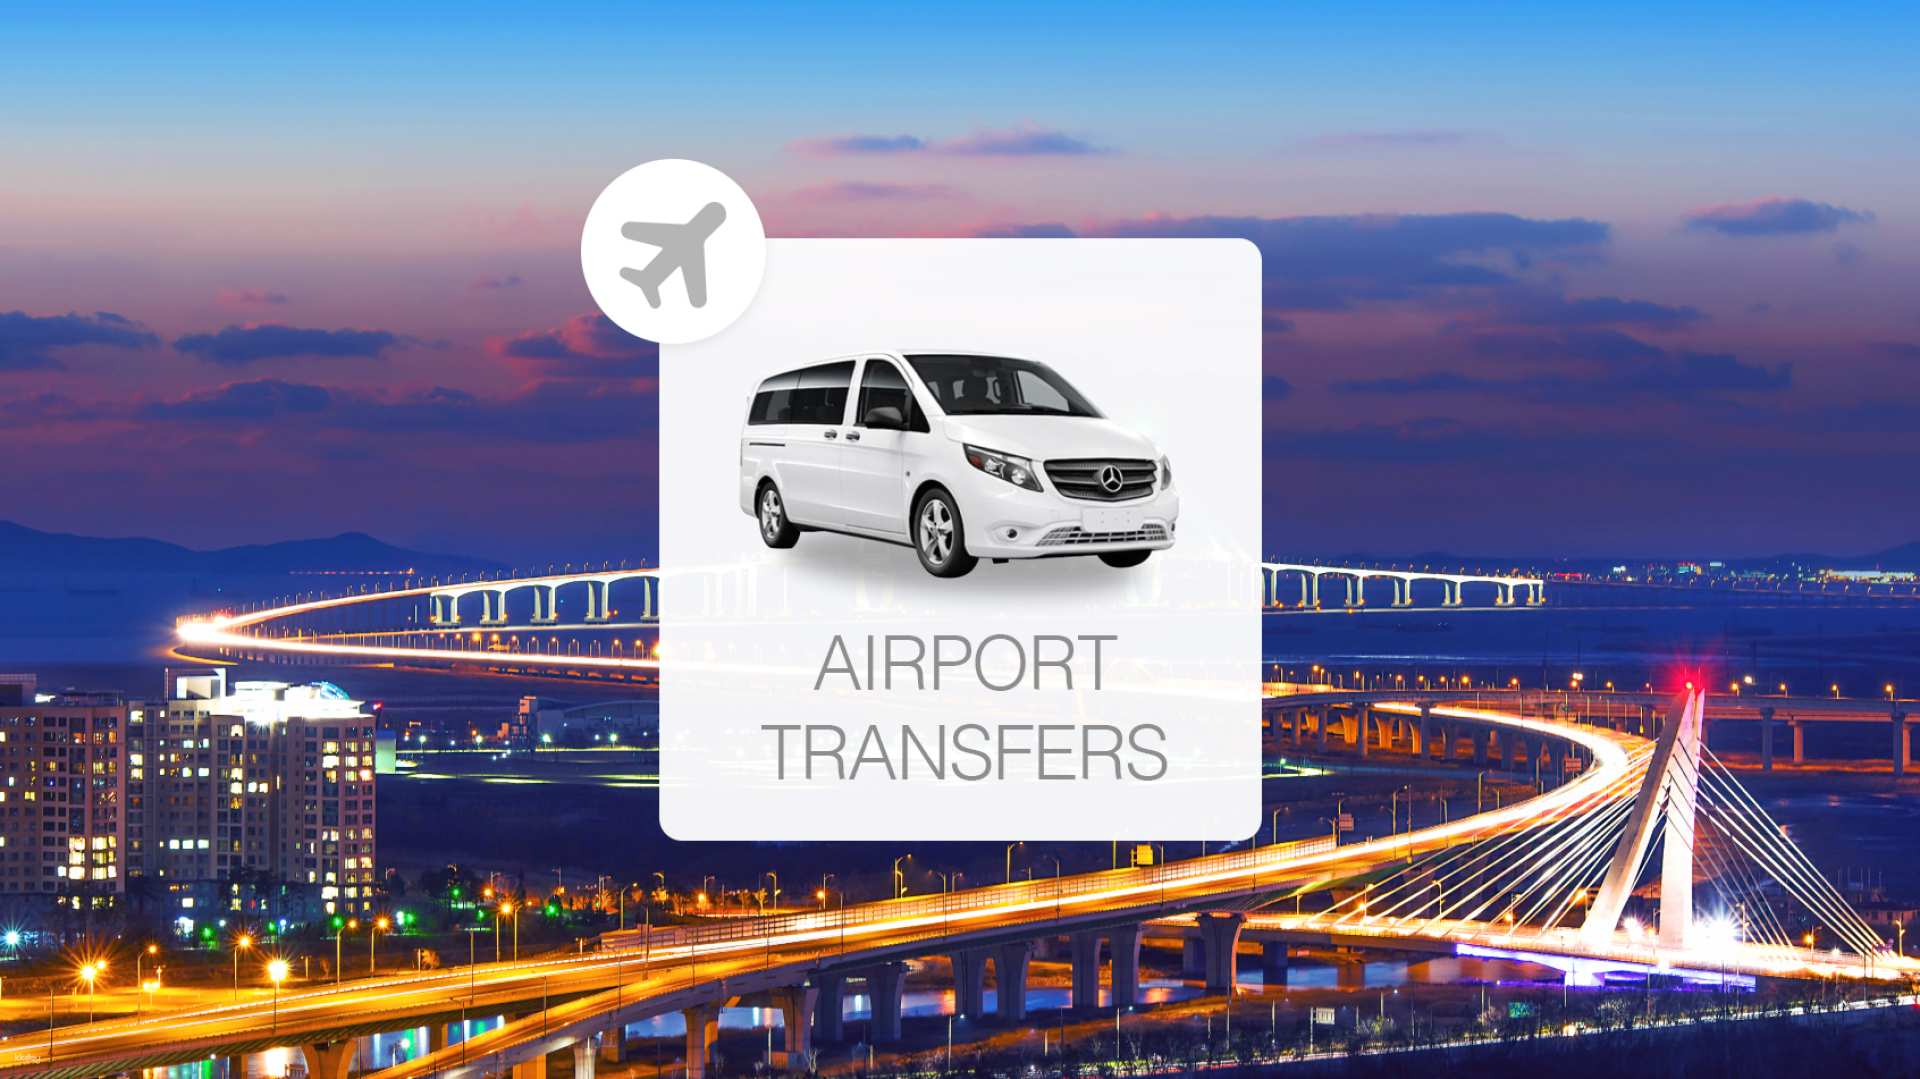 韓國-首爾仁川機場(ICN)至首爾市區接送機專車服務